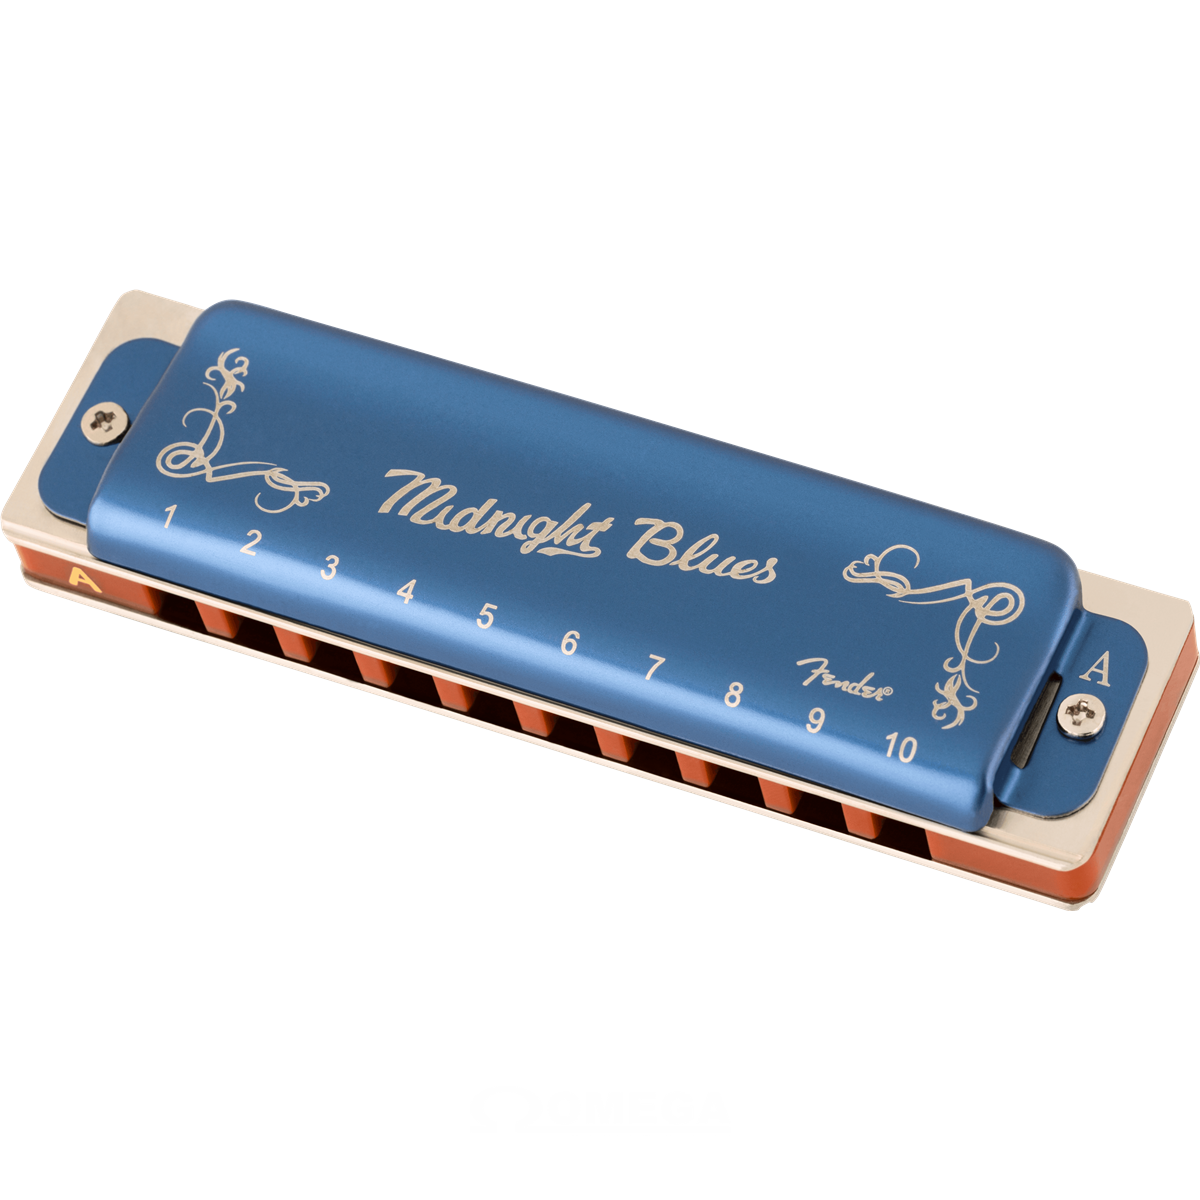 L'h@rmoblog du lover bleu: Le porte-harmonica, l'accessoire de l